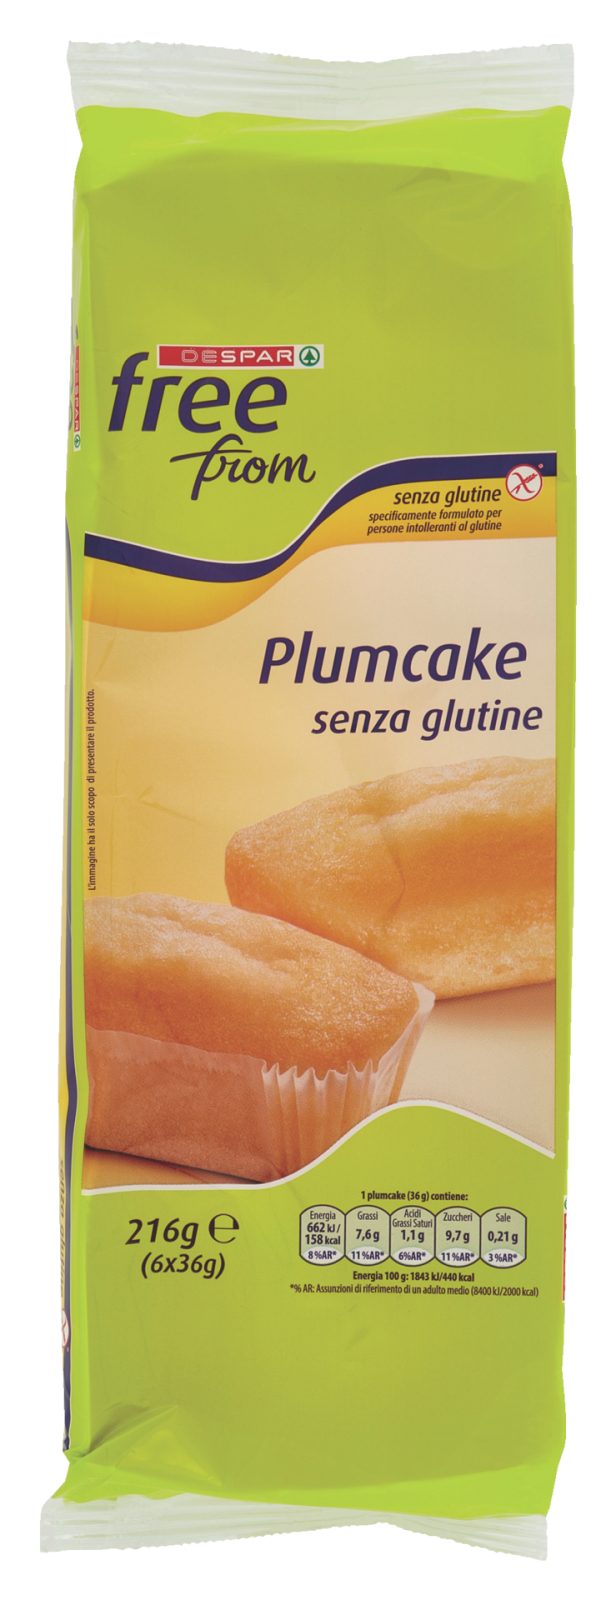 Plumcake, glutenfrei, klassisch